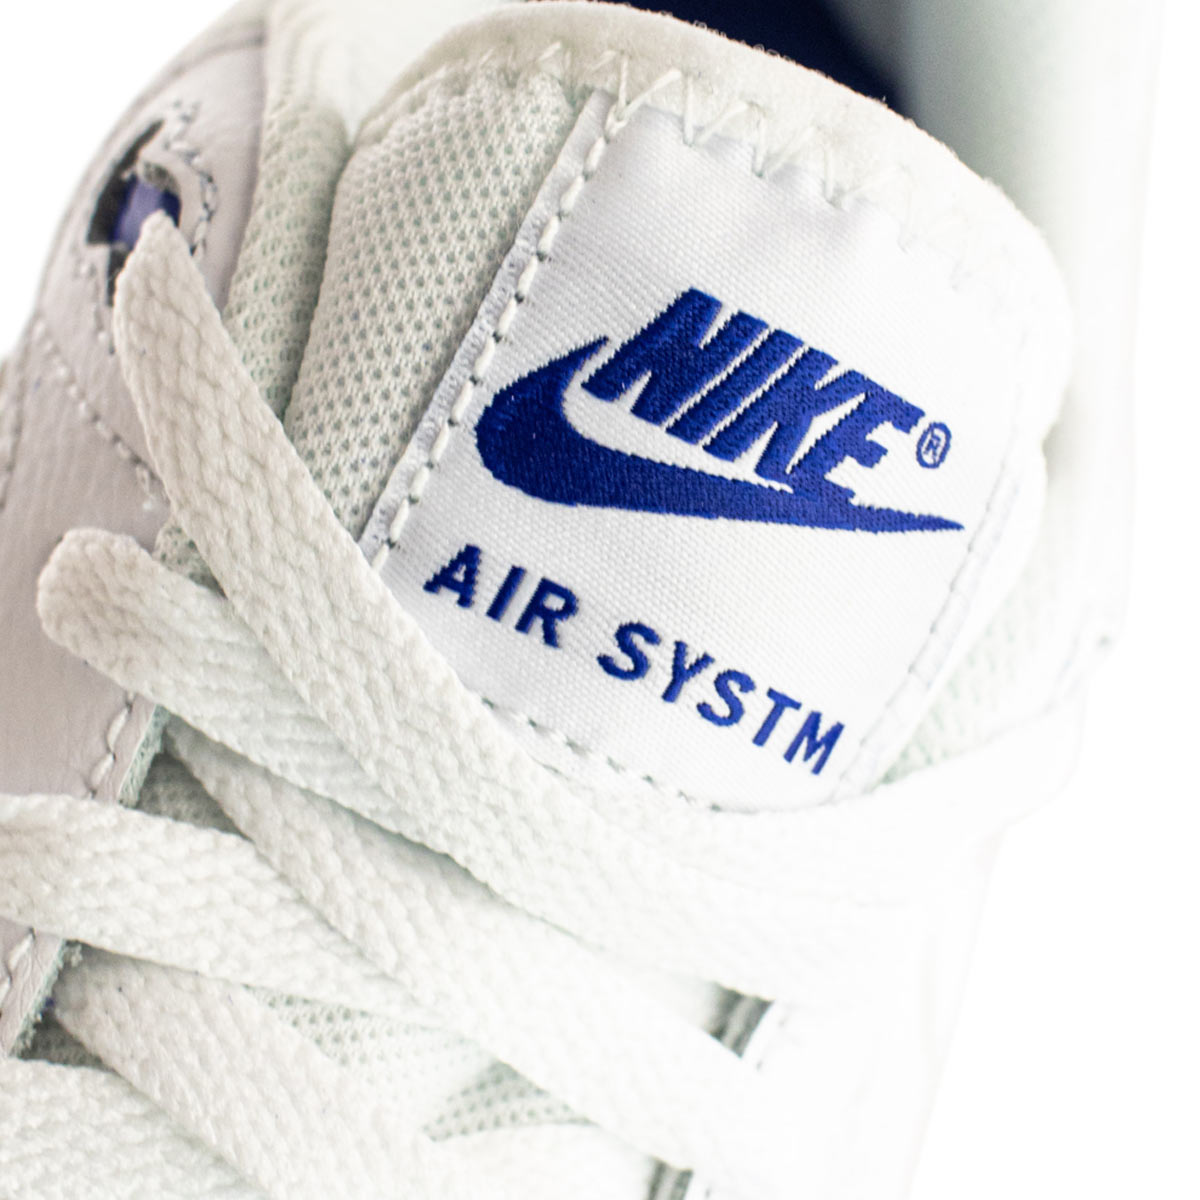 Nike Air Max System DM9537-400-